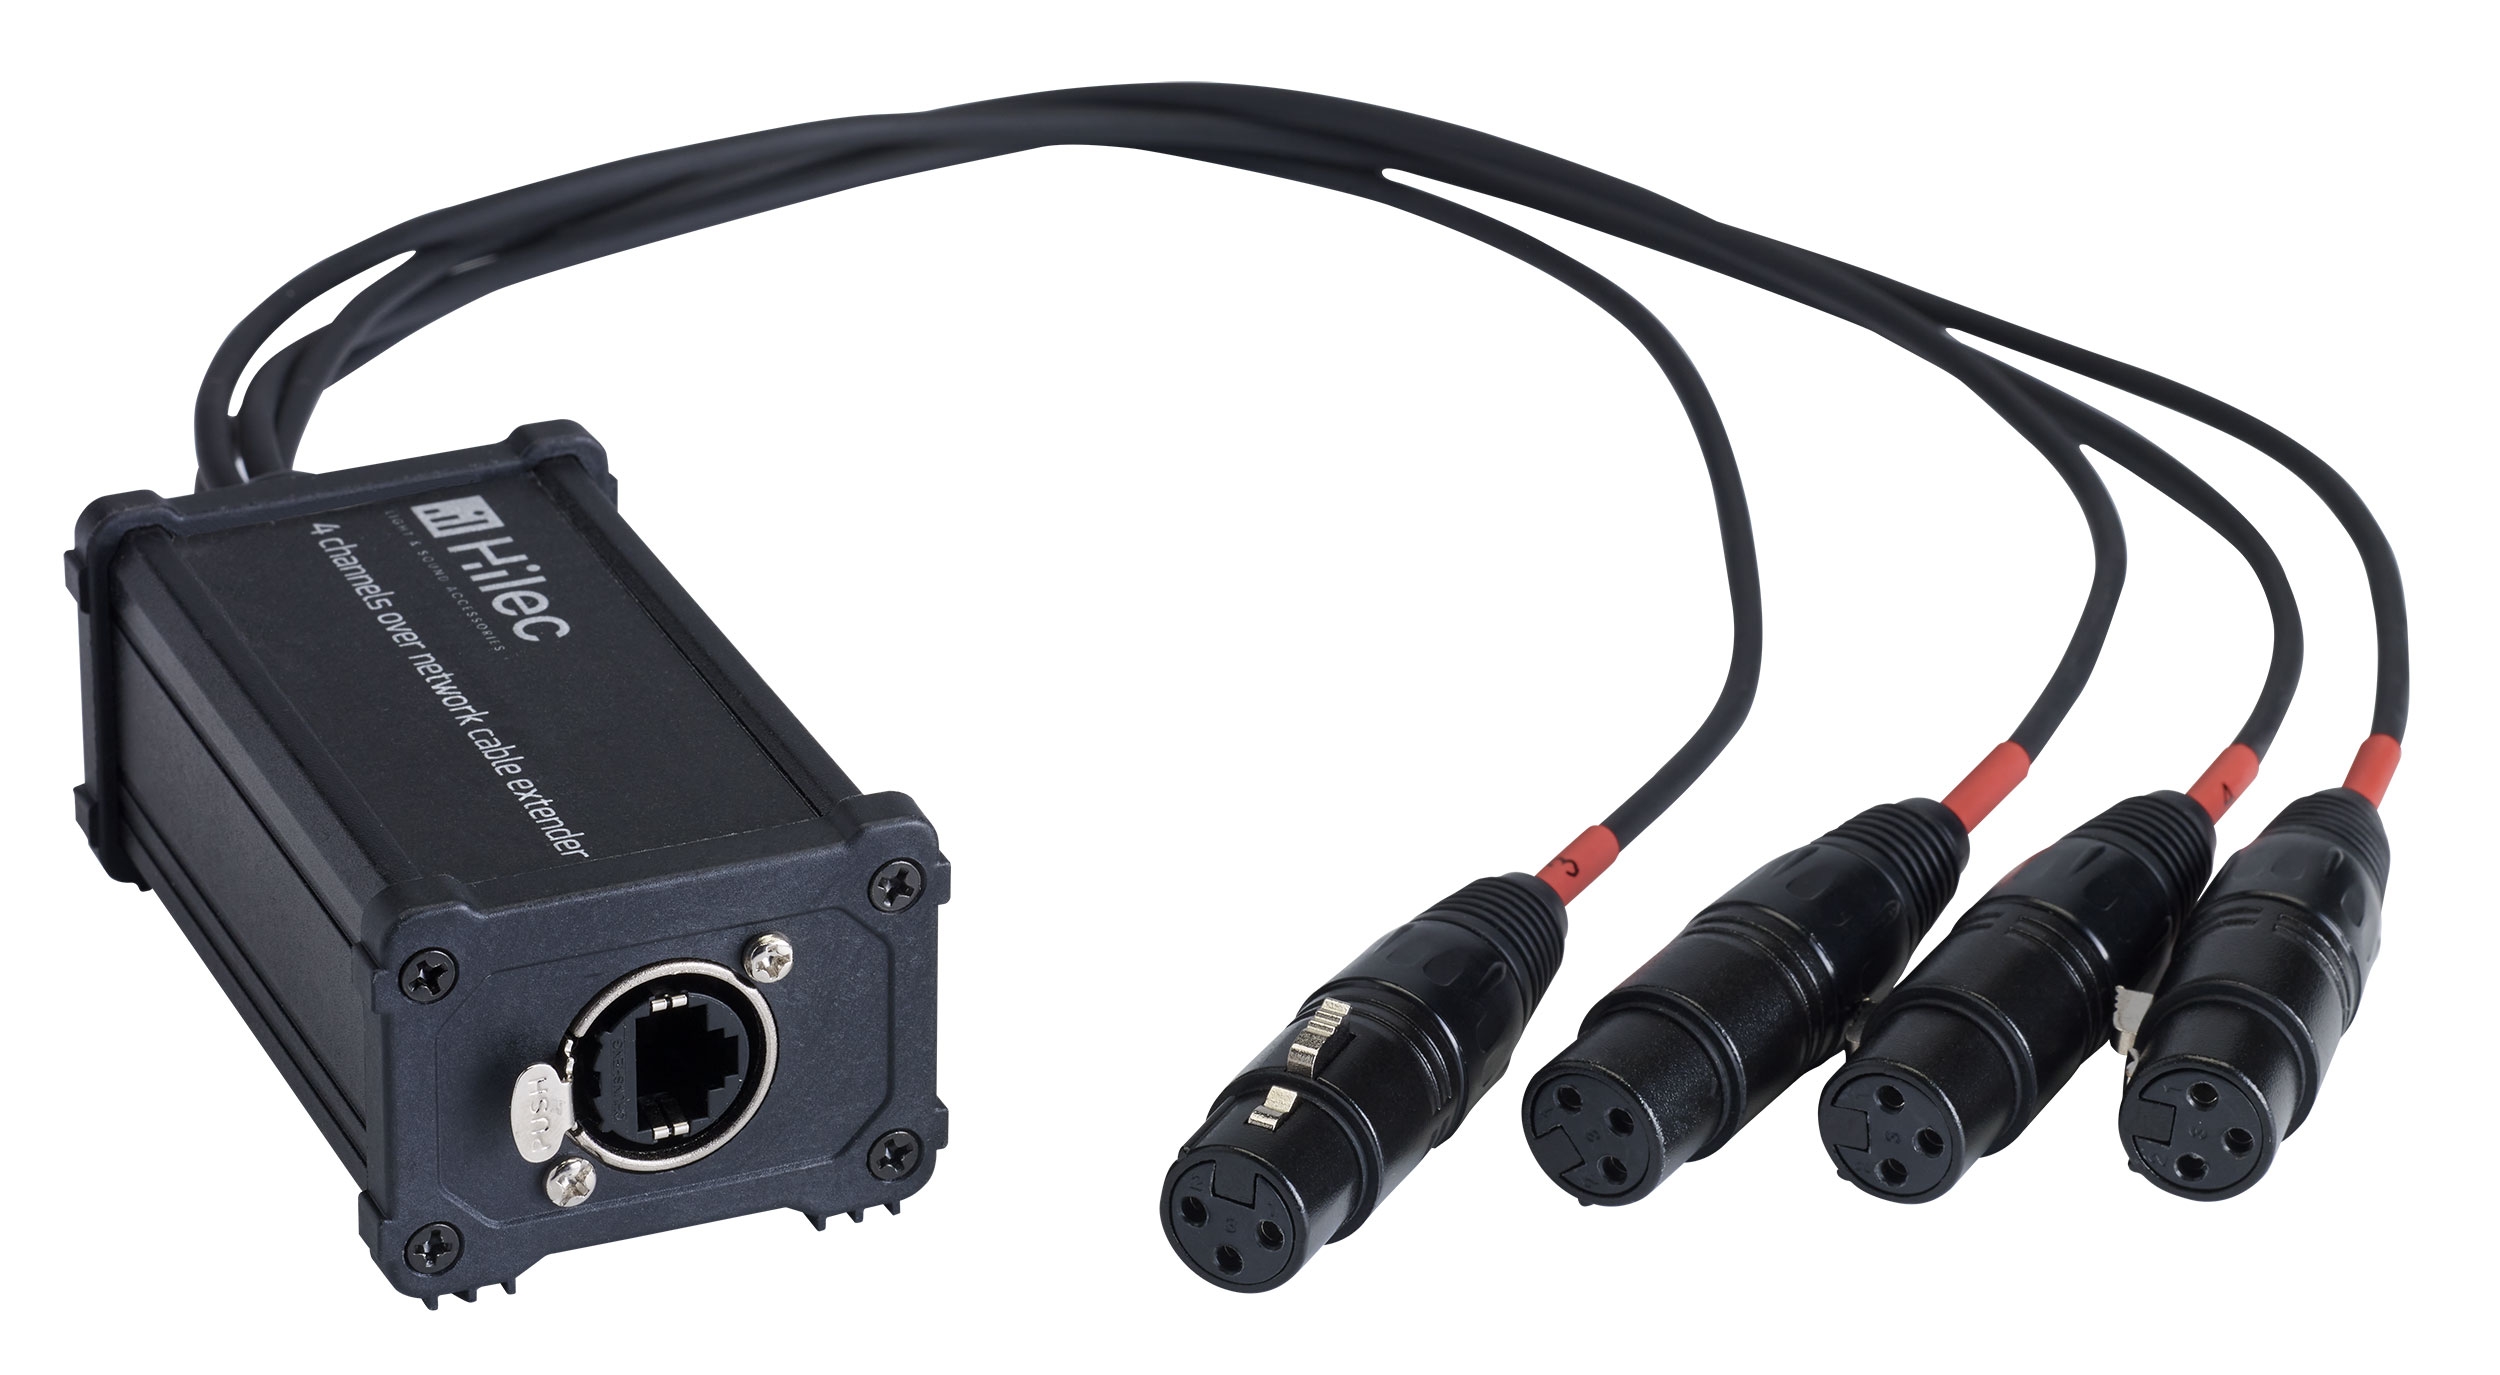 RJ45 / XLR3F adapterdoos voor audio of DMX signaal